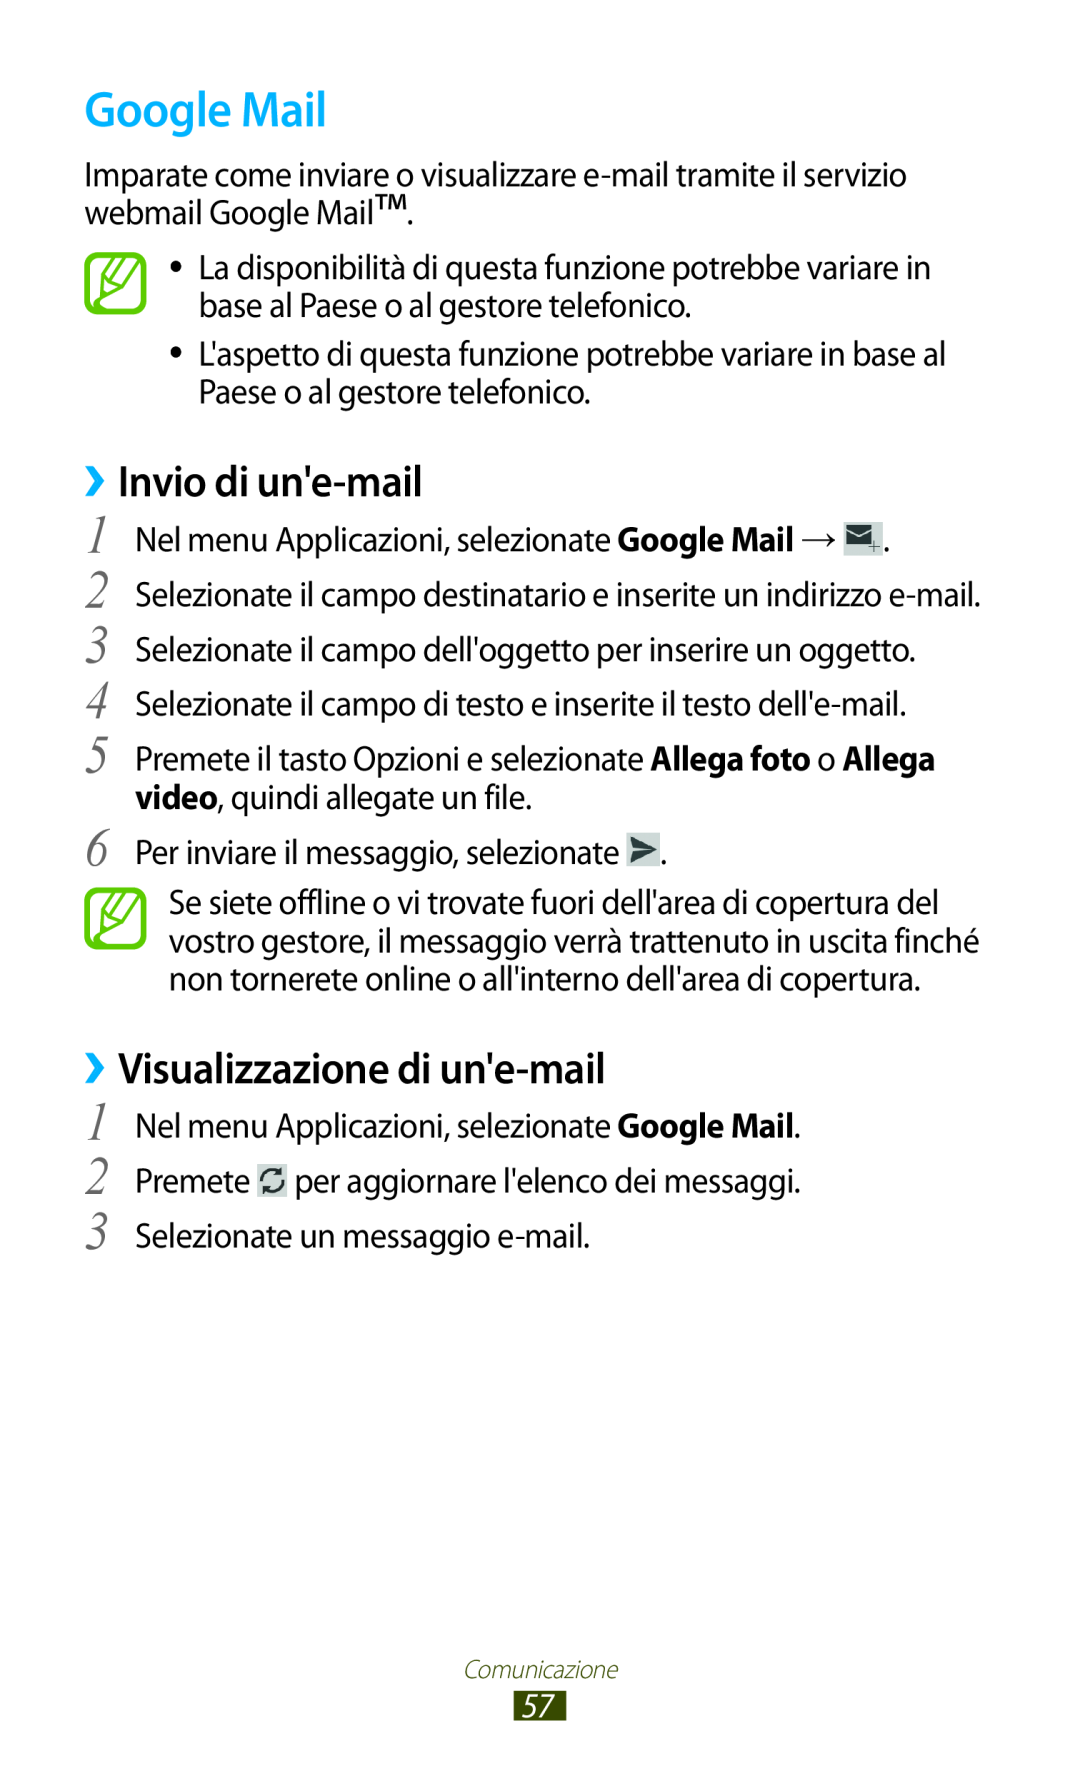 Samsung GT-S7560ZKAXEO, GT-S7560UWAWIN, GT-S7560ZKAWIN manual Google Mail, Invio di une-mail, Visualizzazione di une-mail 